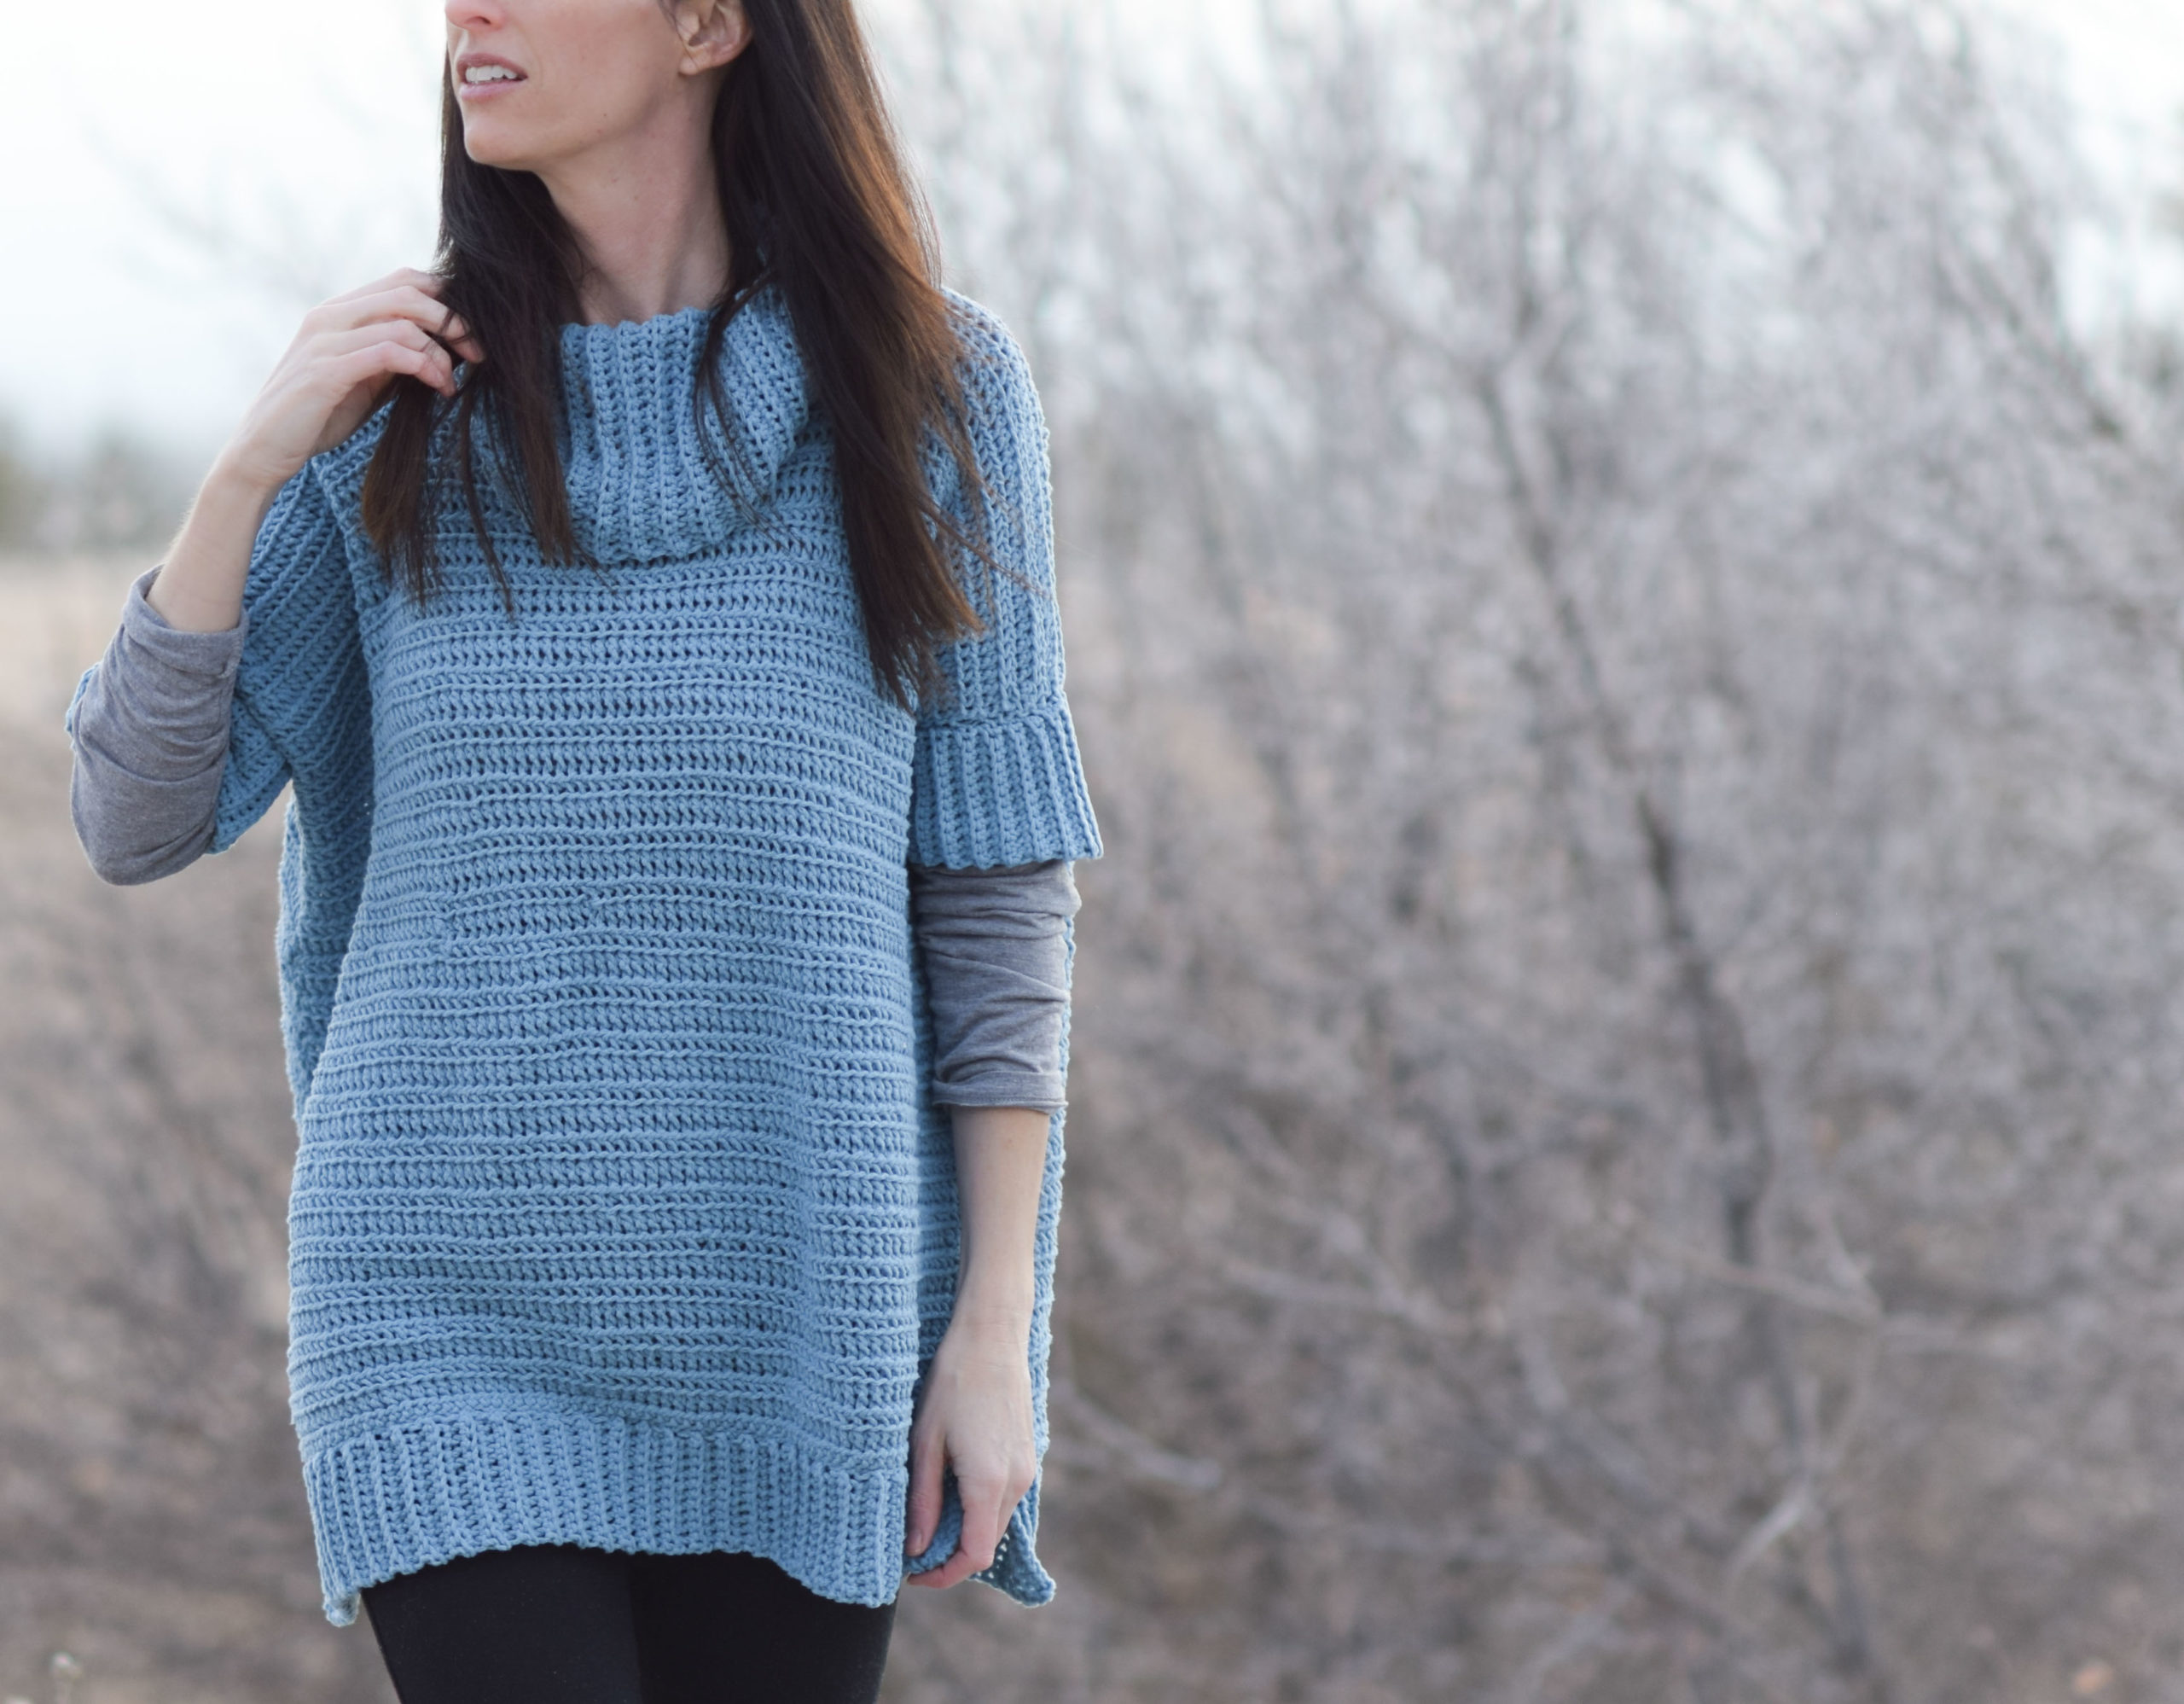 Side To Side Cowl Neck Sweater Pattern (Crochet) – Lion Brand Yarn